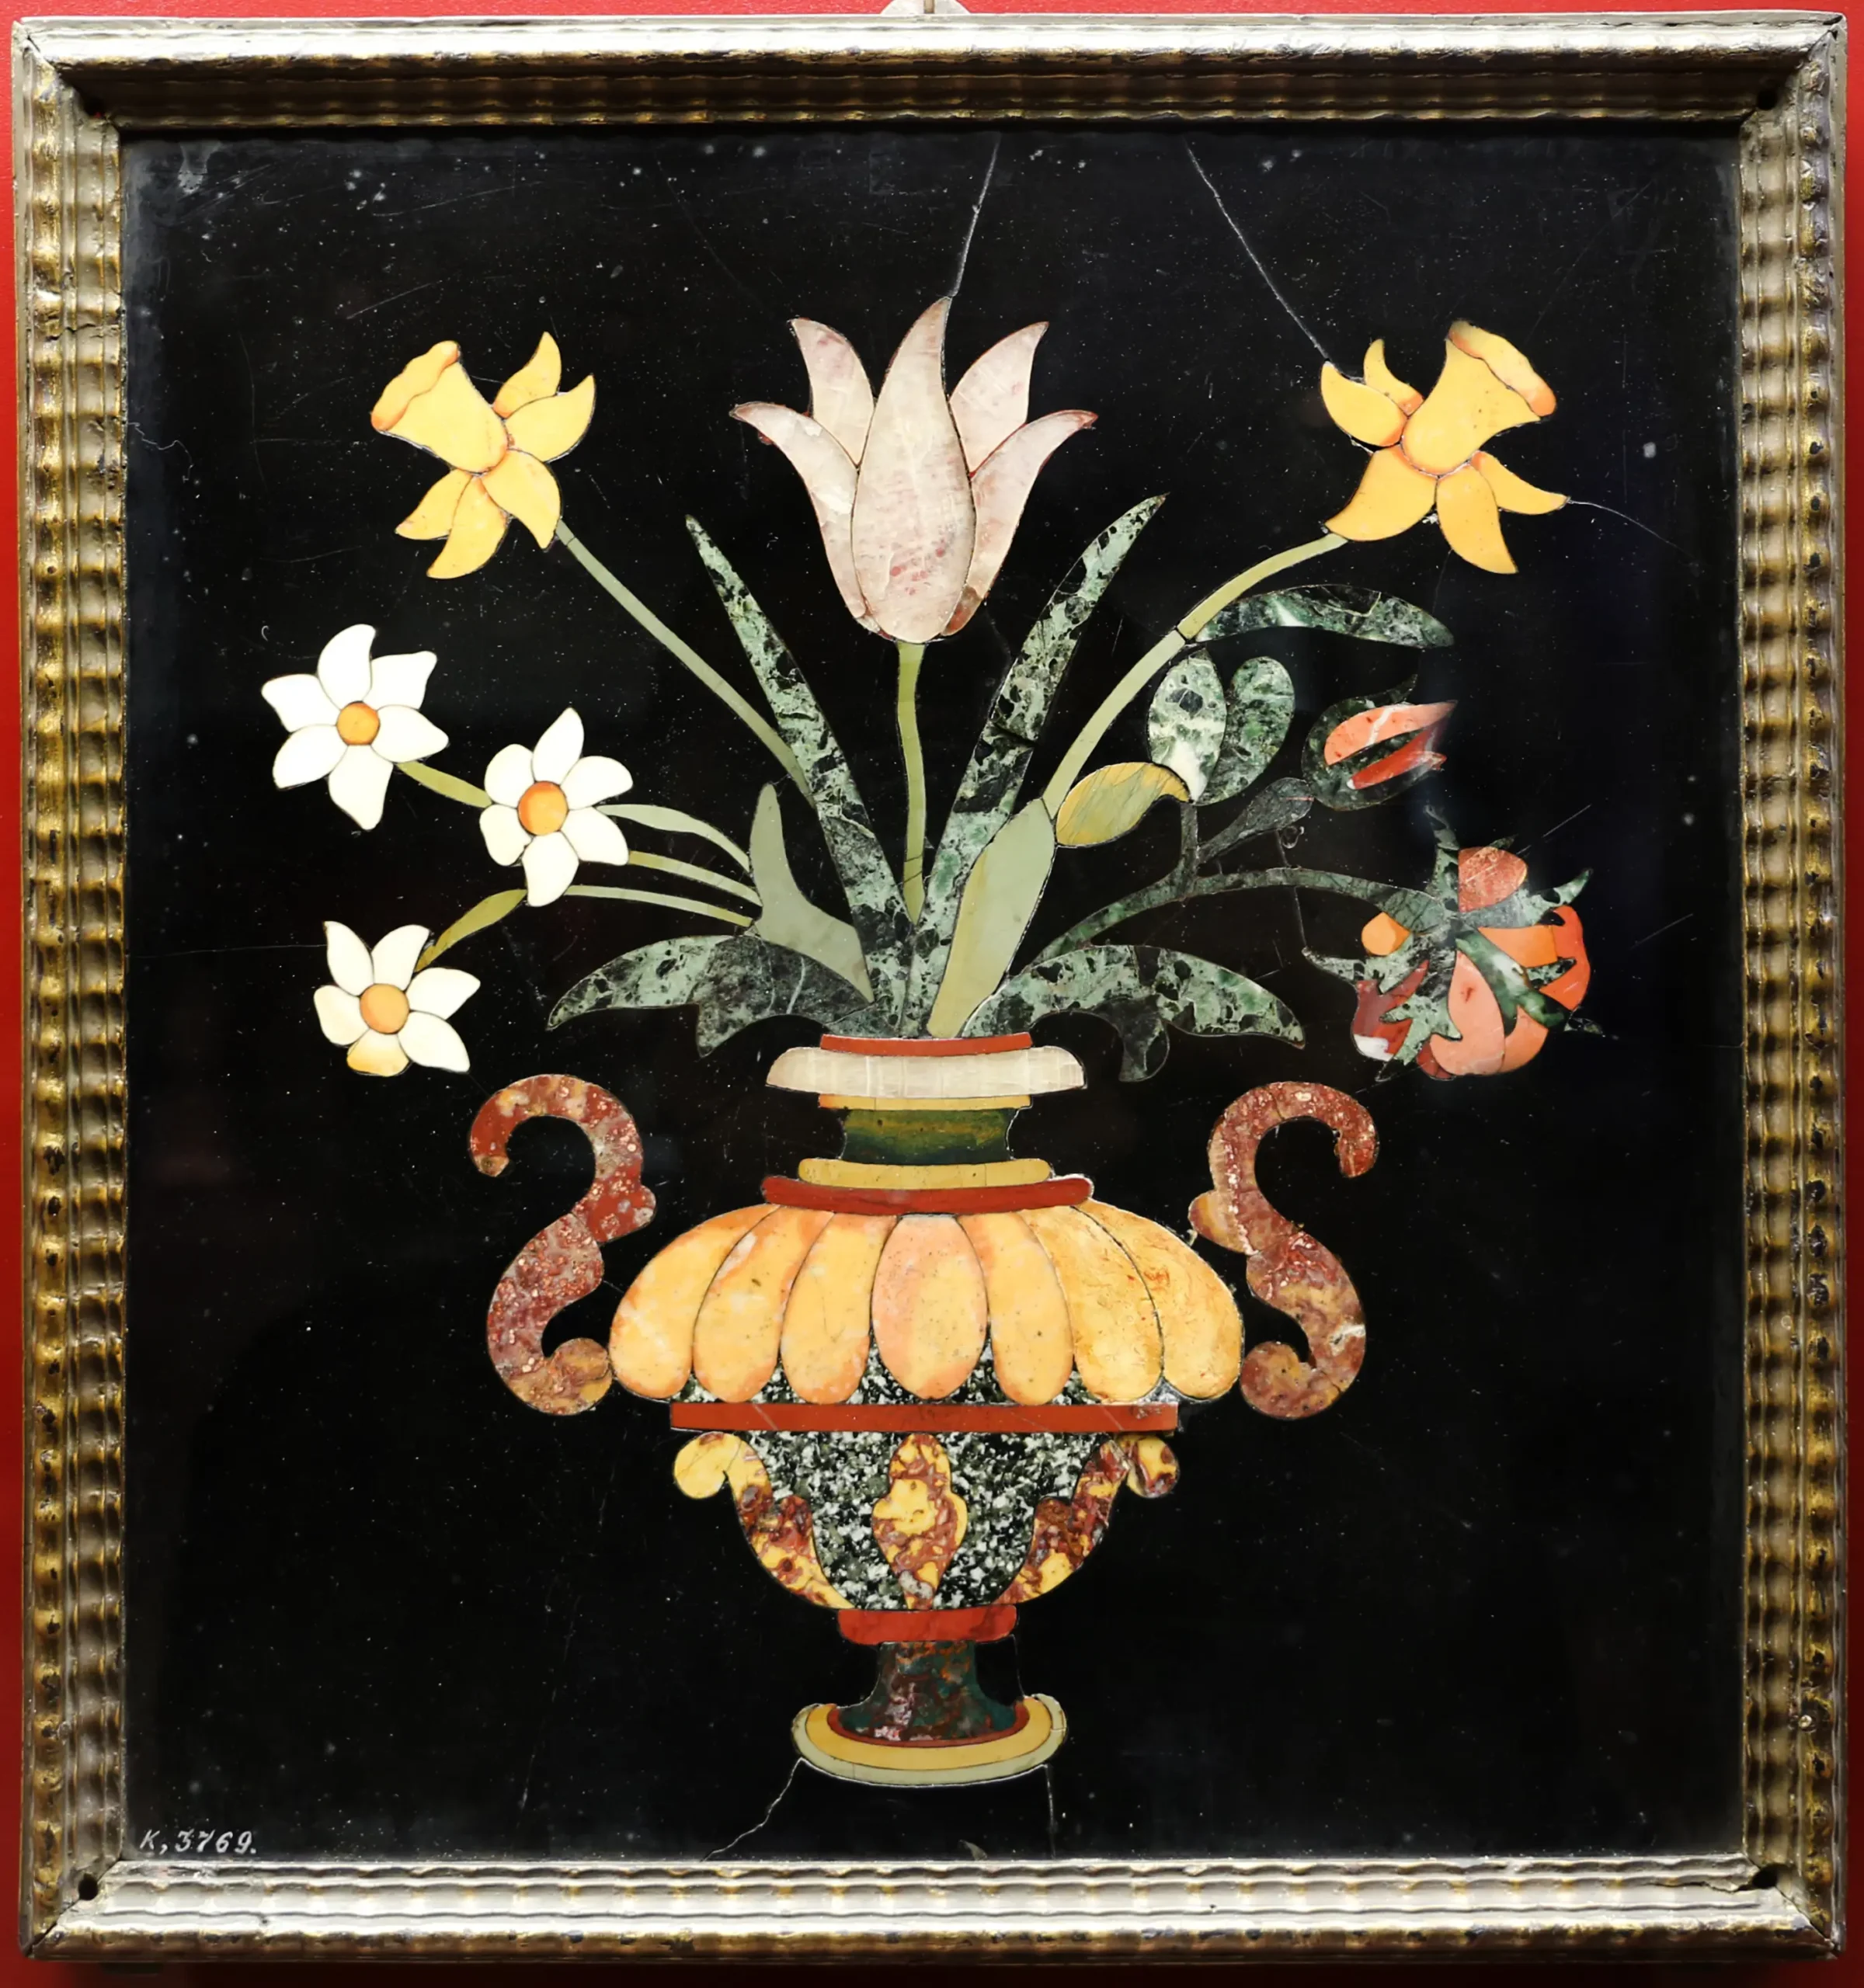 mosaici con fiori - Come si chiamano le tessere del mosaico